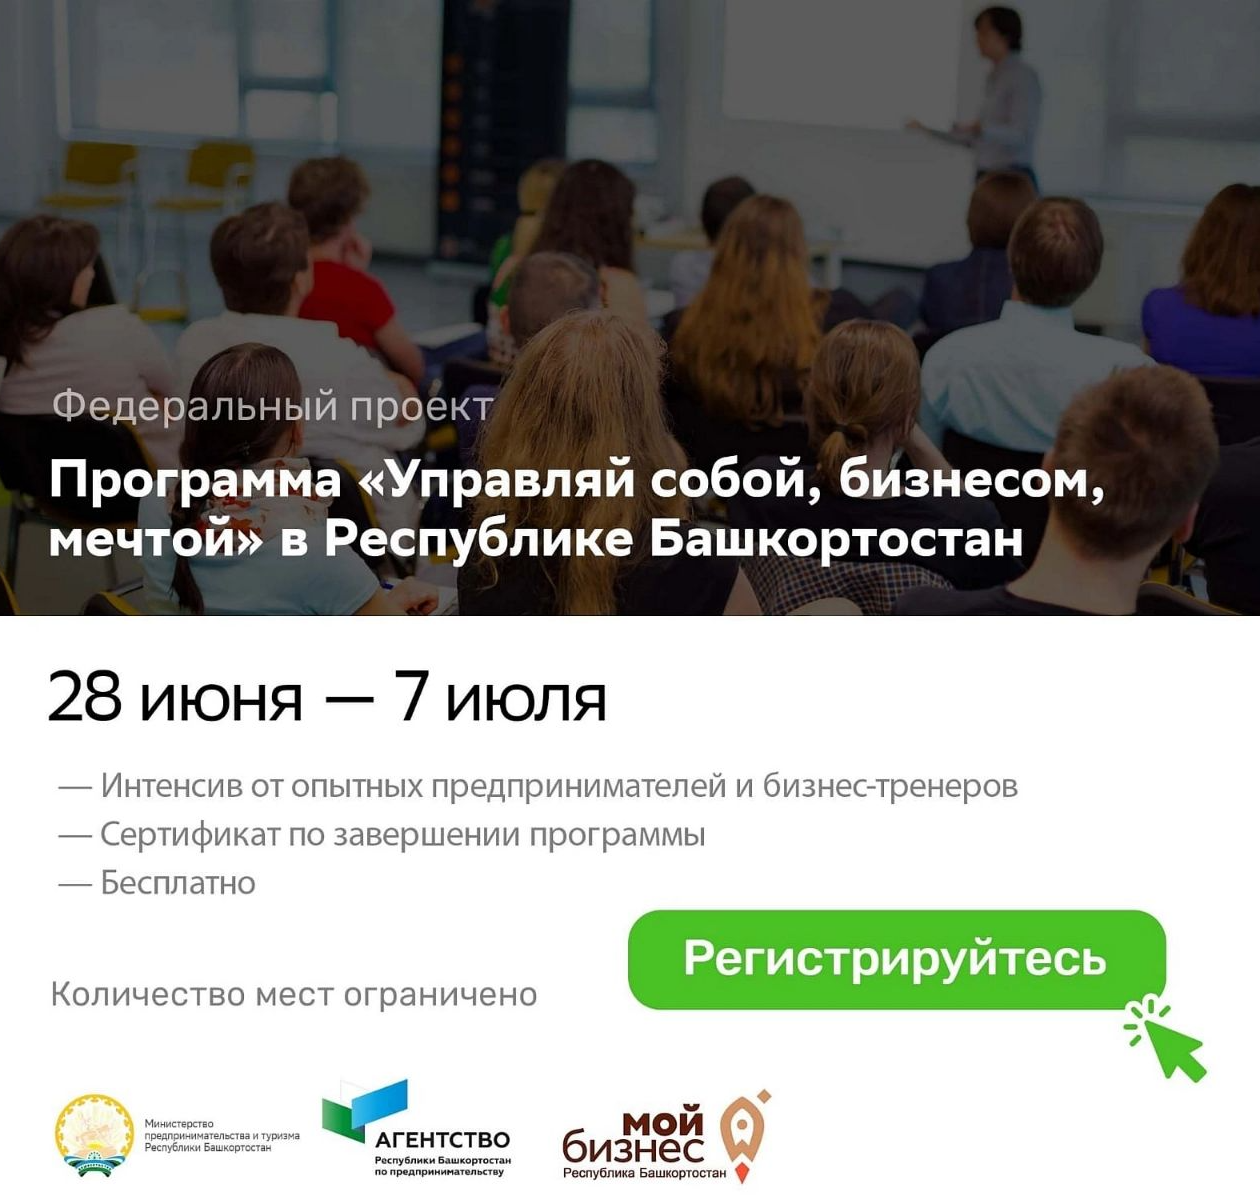 Центр «Мой бизнес» Республики Башкортостан приглашает предпринимателей на образовательный проект